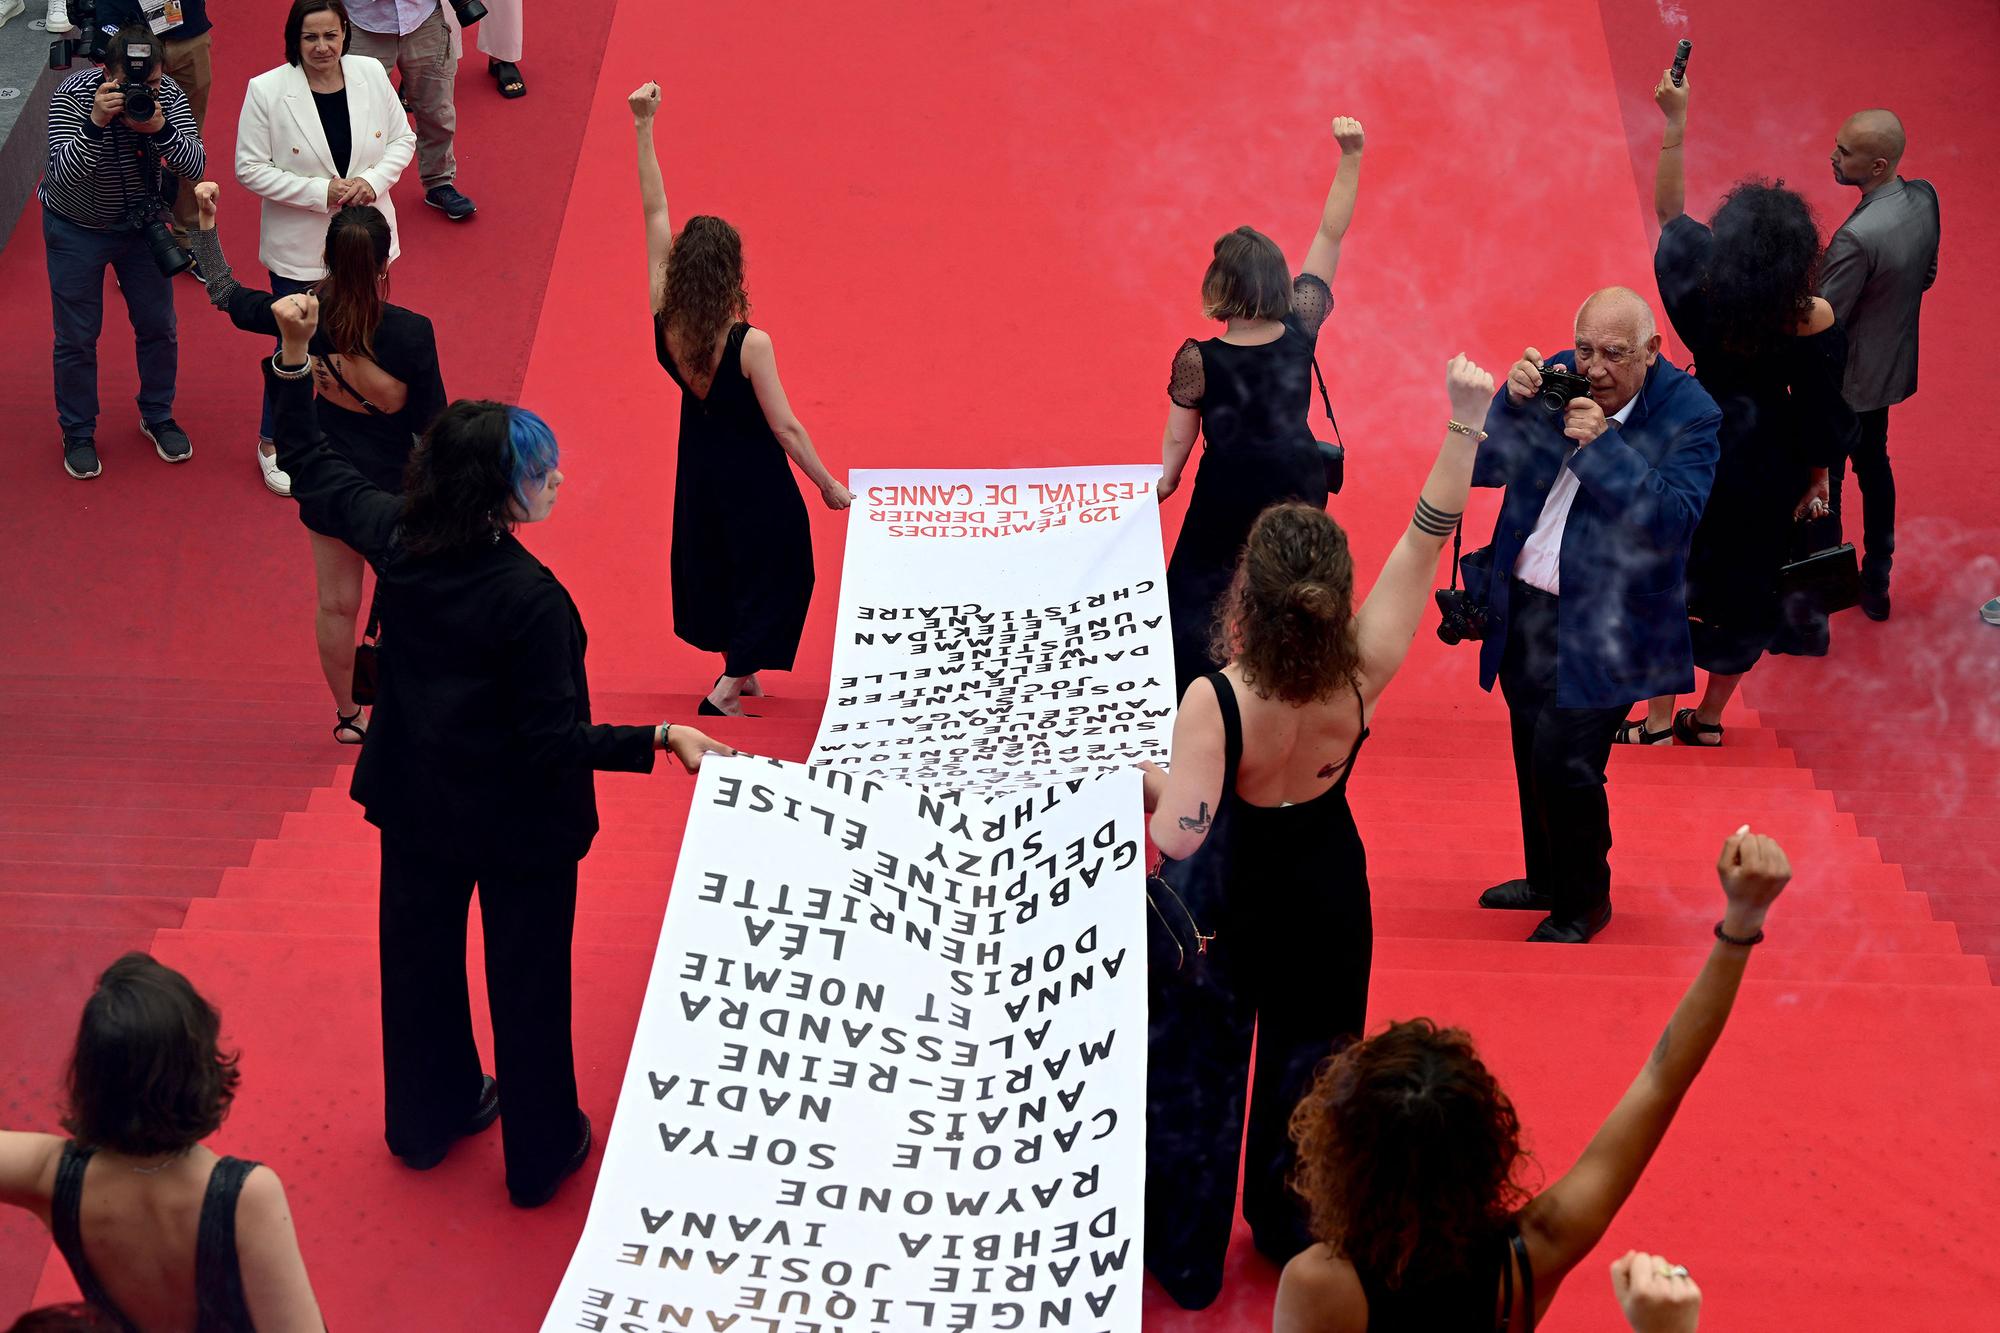 Des membres du groupe féministe "Les Colleuses" ont déroulé une banderole sur le tapis rouge avec le nom des 129 victimes de féminicides en France, "depuis le dernier Festival de Cannes" en juillet 2021. [AFP - Antonin Tuillier]